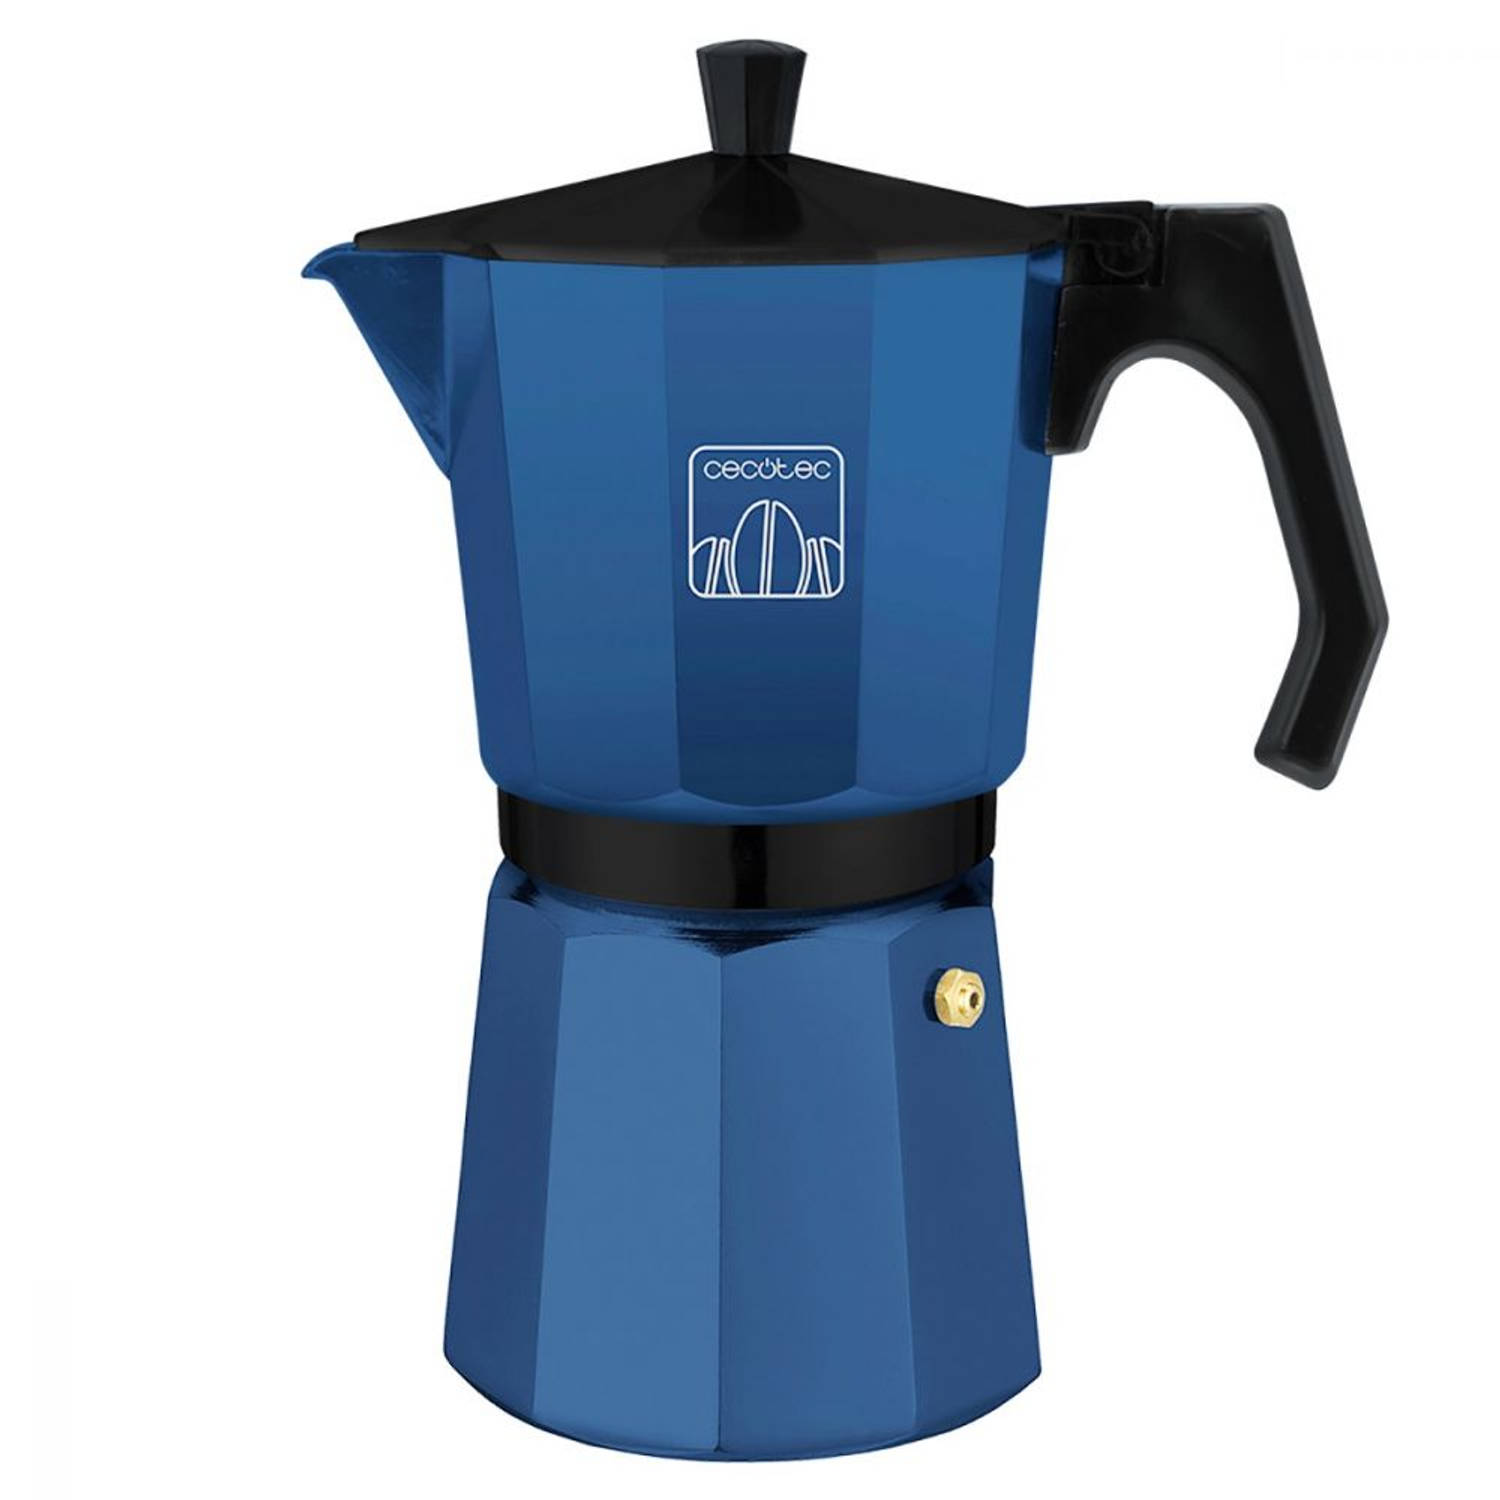 Cecotec Percolator - Vaatwasserbestendig - Diverse warmtebronnen - 6 Kops - Italiaanse koffiepot - Blauw